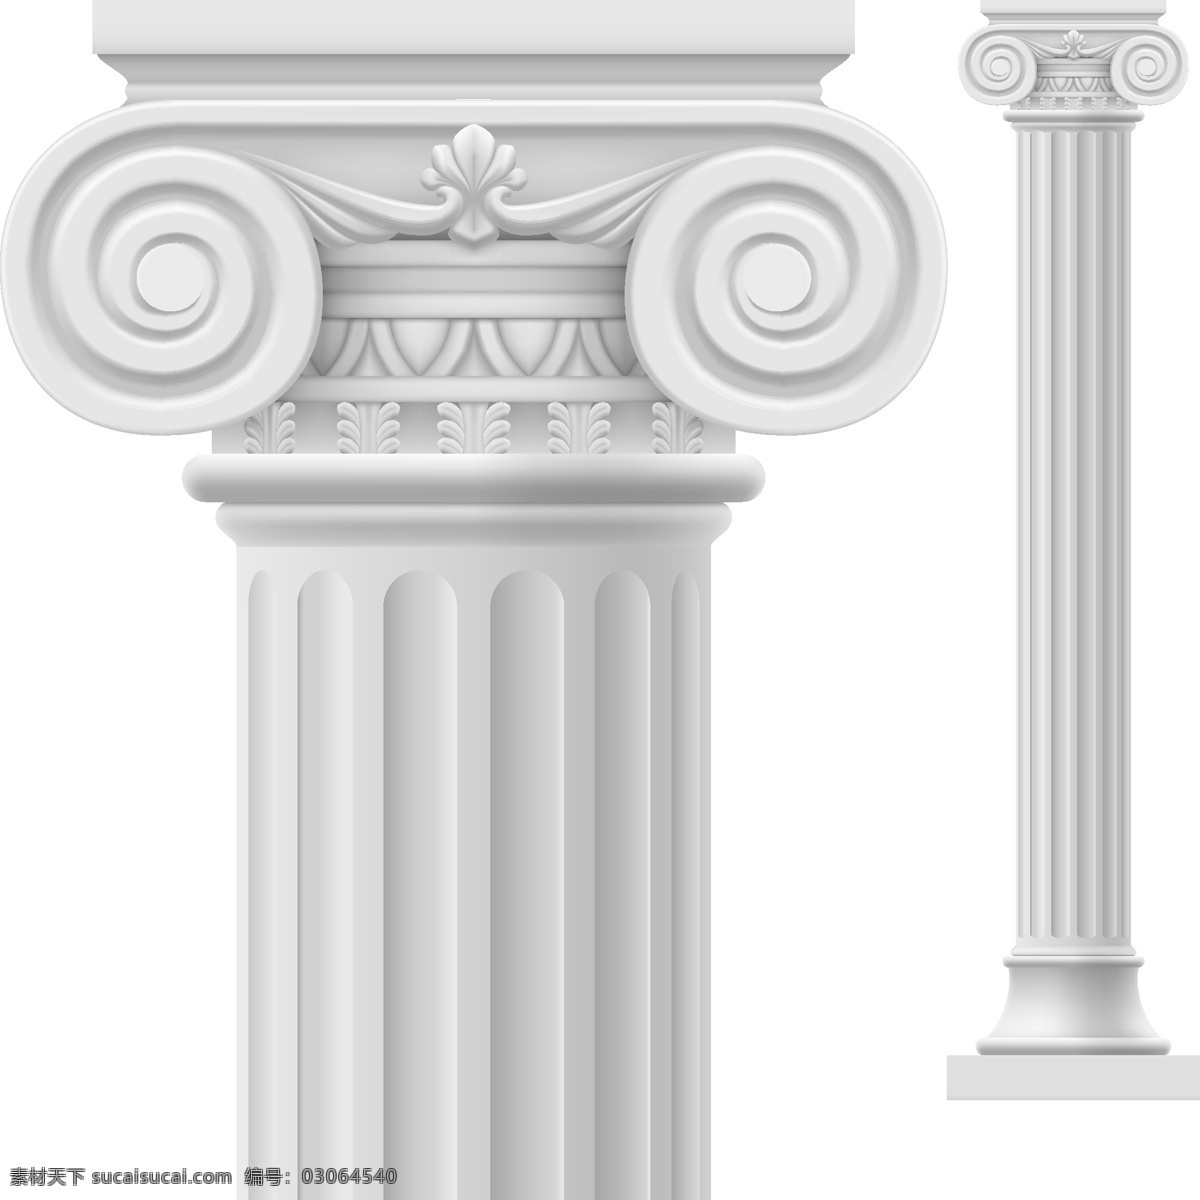 石柱矢量 雕刻 浮雕 复古 宫廷 古典 建筑 建筑物 欧式 石柱 条纹 柱子 圆柱 米白色 旧式 椭圆形 近影 全影 细节图 txyuu 矢量图 其他矢量图